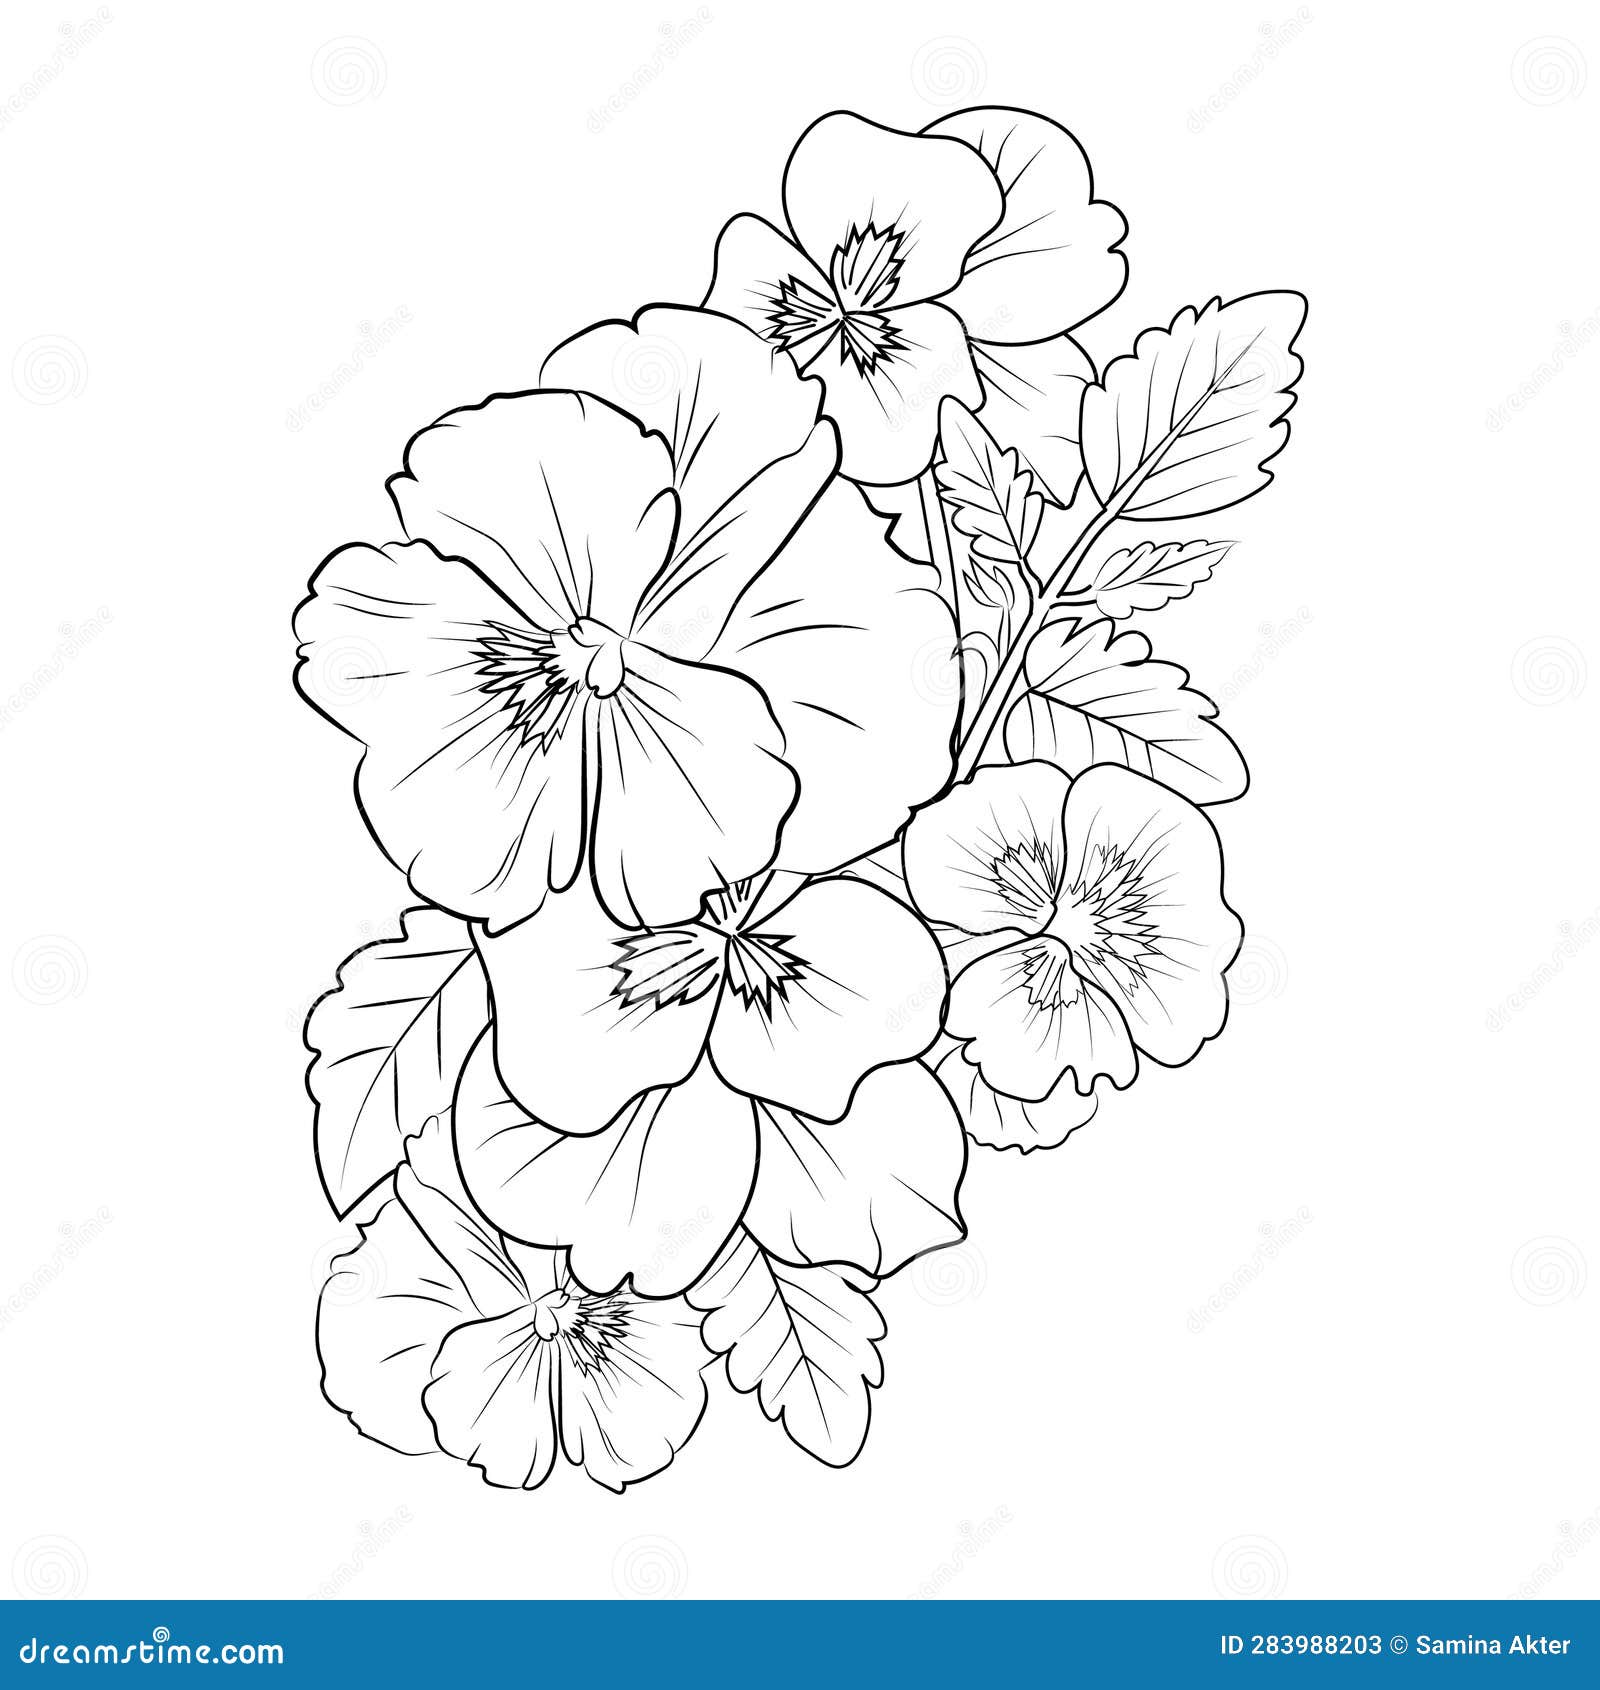 How To Draw A Flower Easy Tutorial | Design Bundles-saigonsouth.com.vn